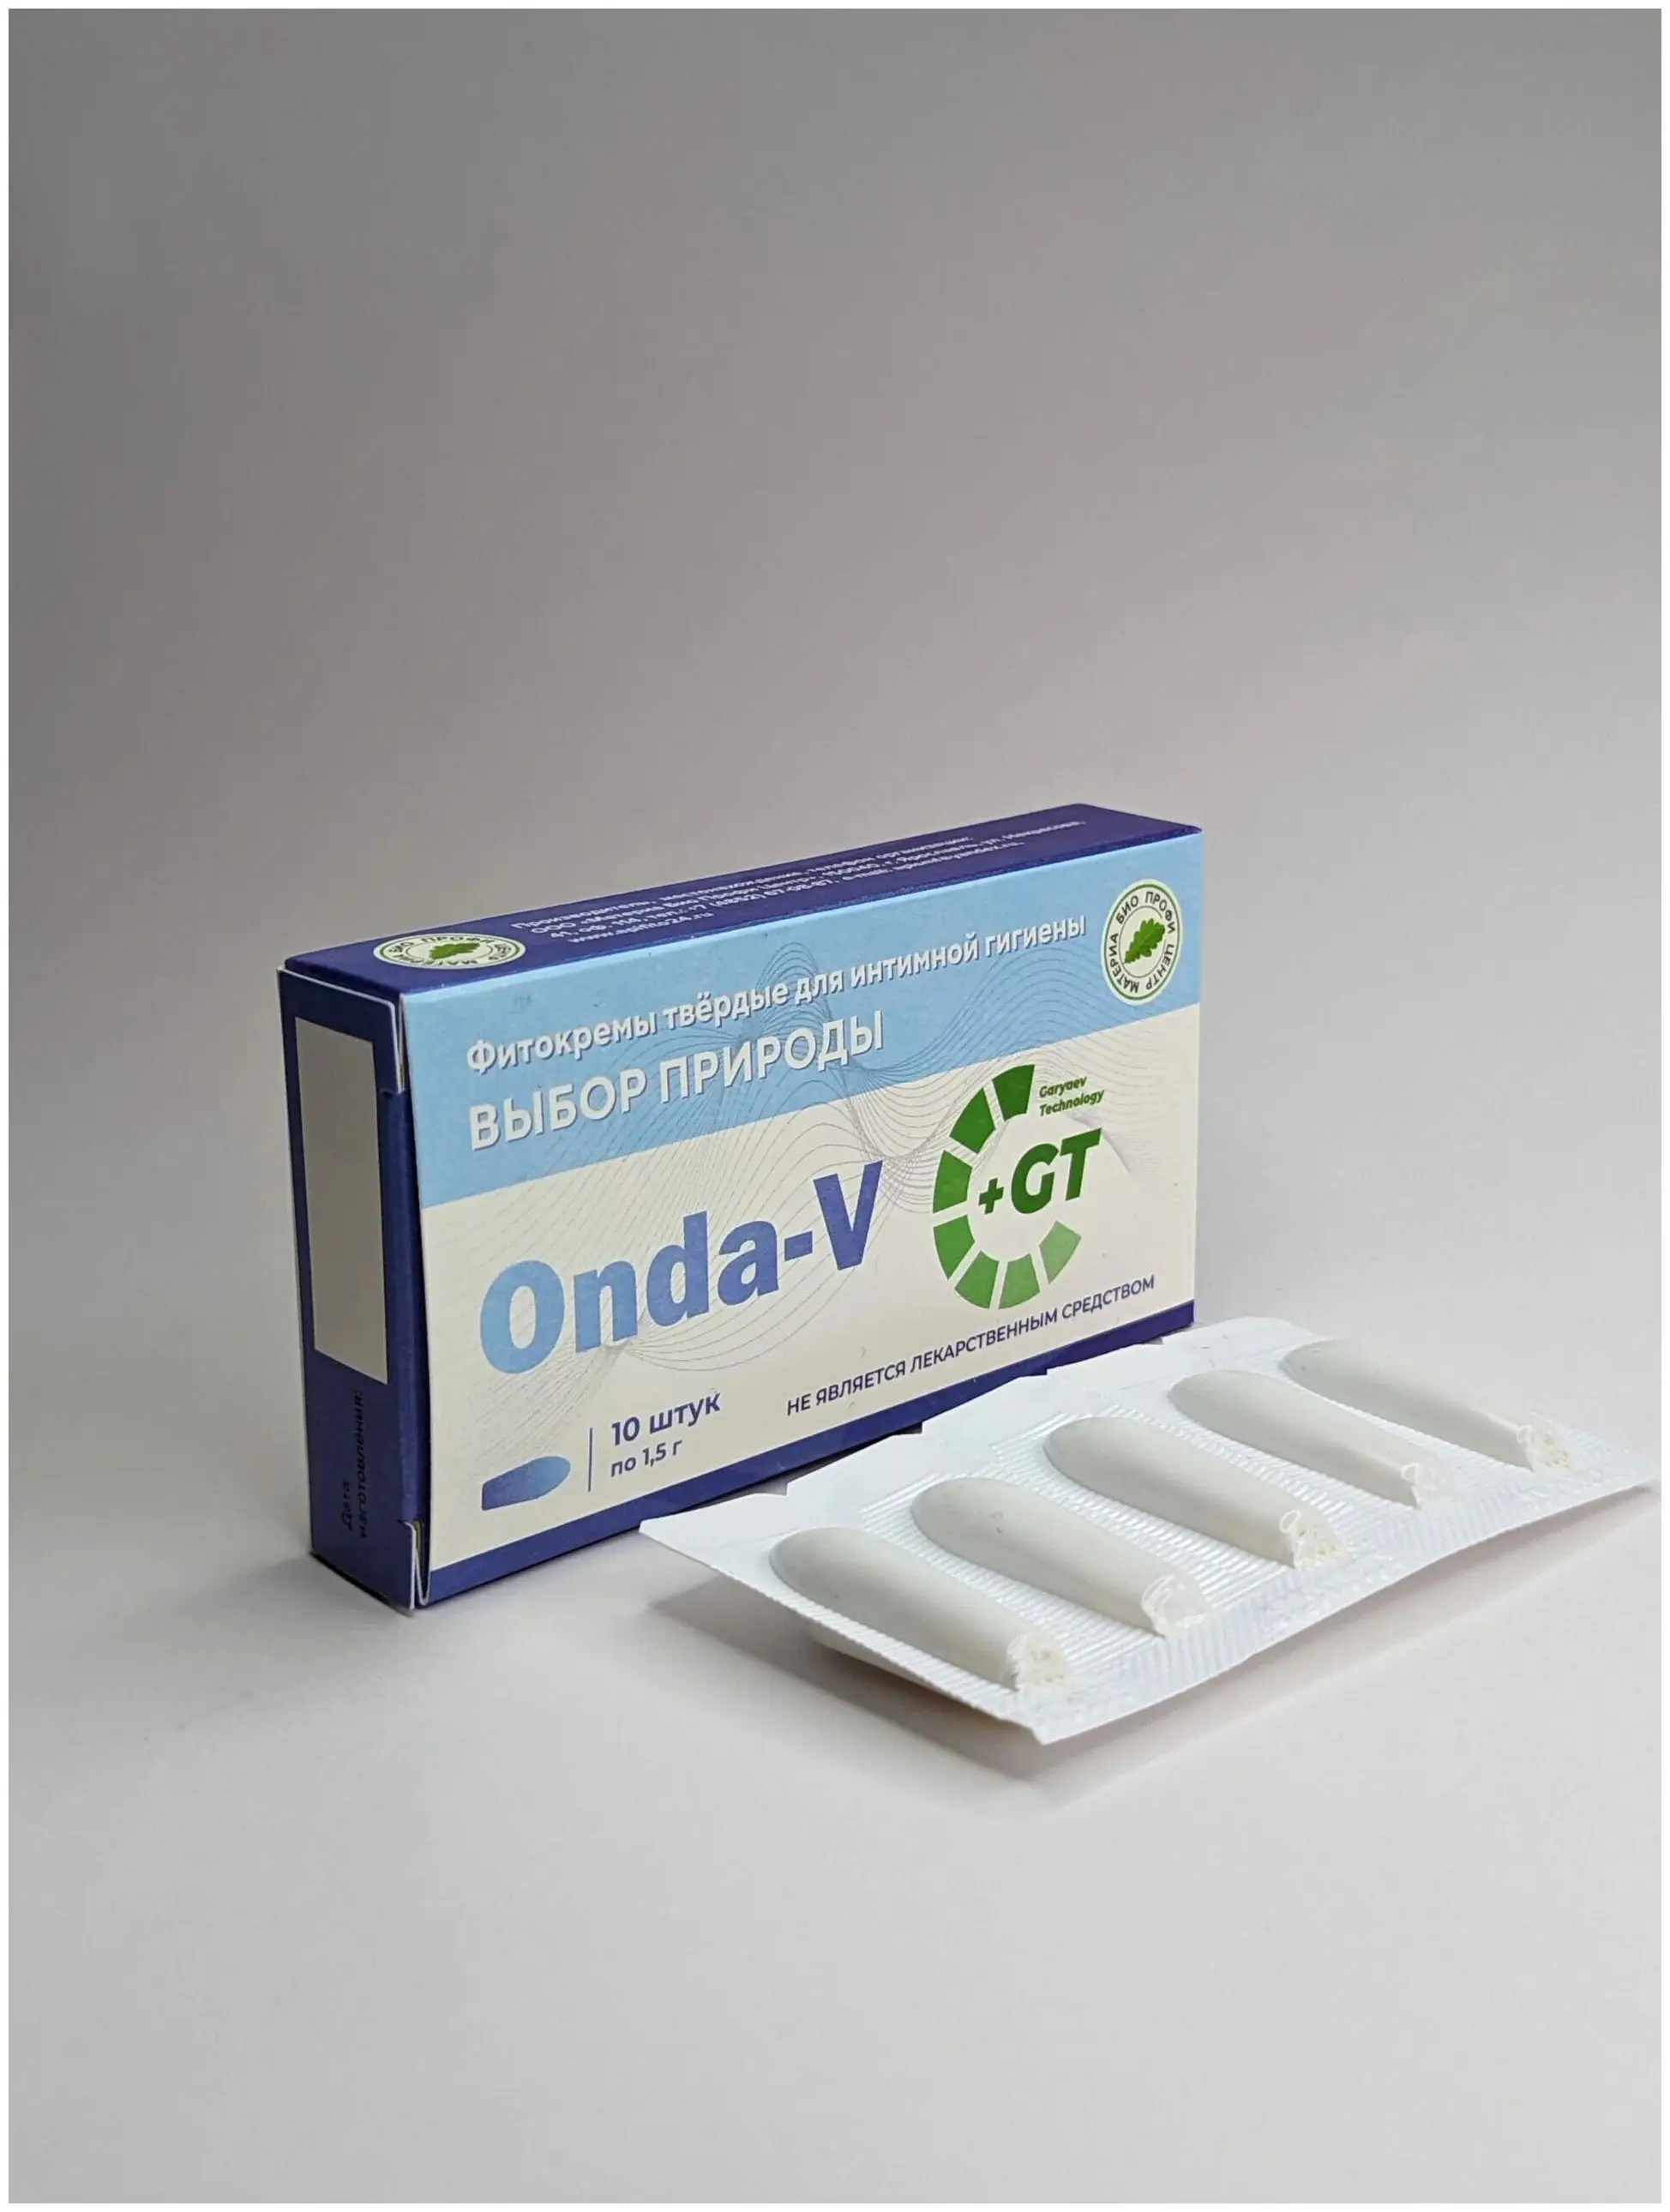 Фитосвечи Onda-V Онда-В (волновые вагинальные), блистер 10 шт по 1,5 гр 